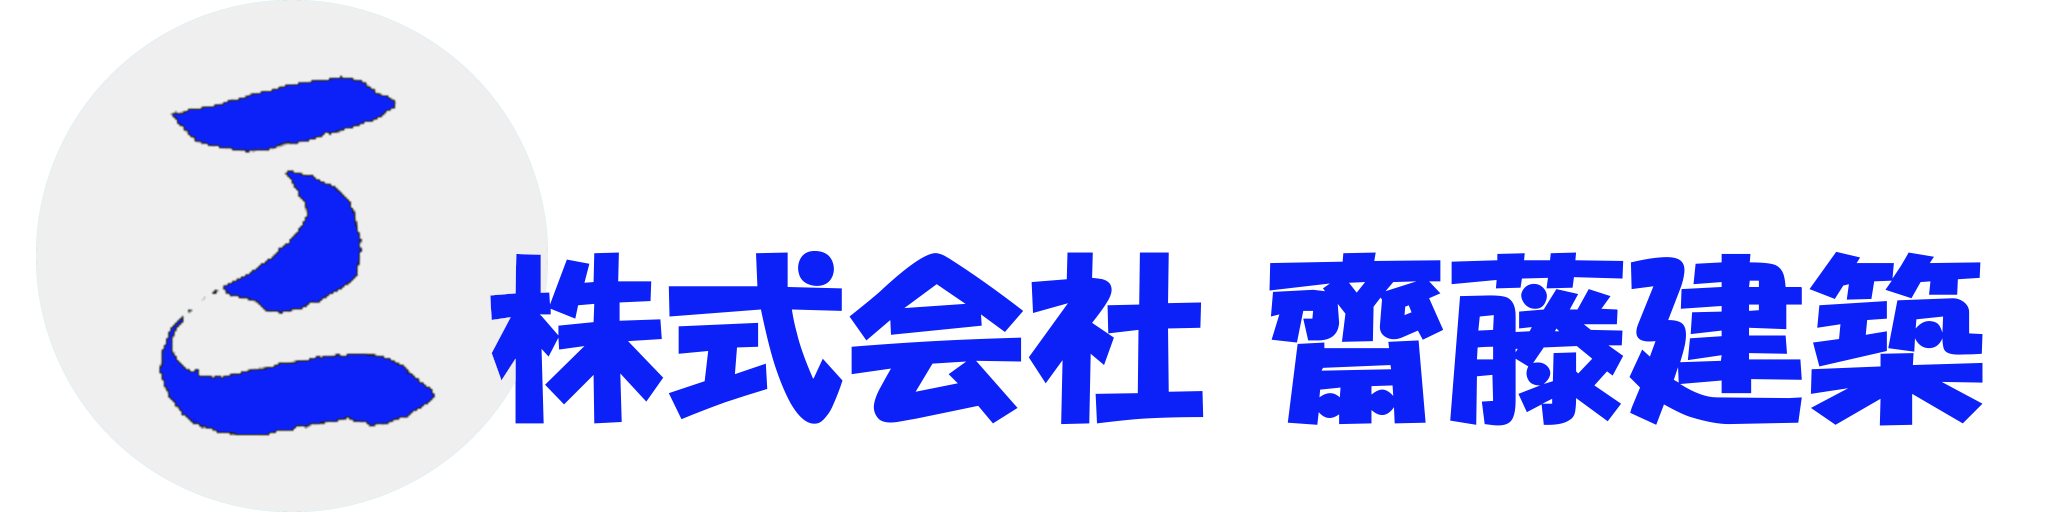 株式会社齋藤建築の会社ロゴと社名の画像